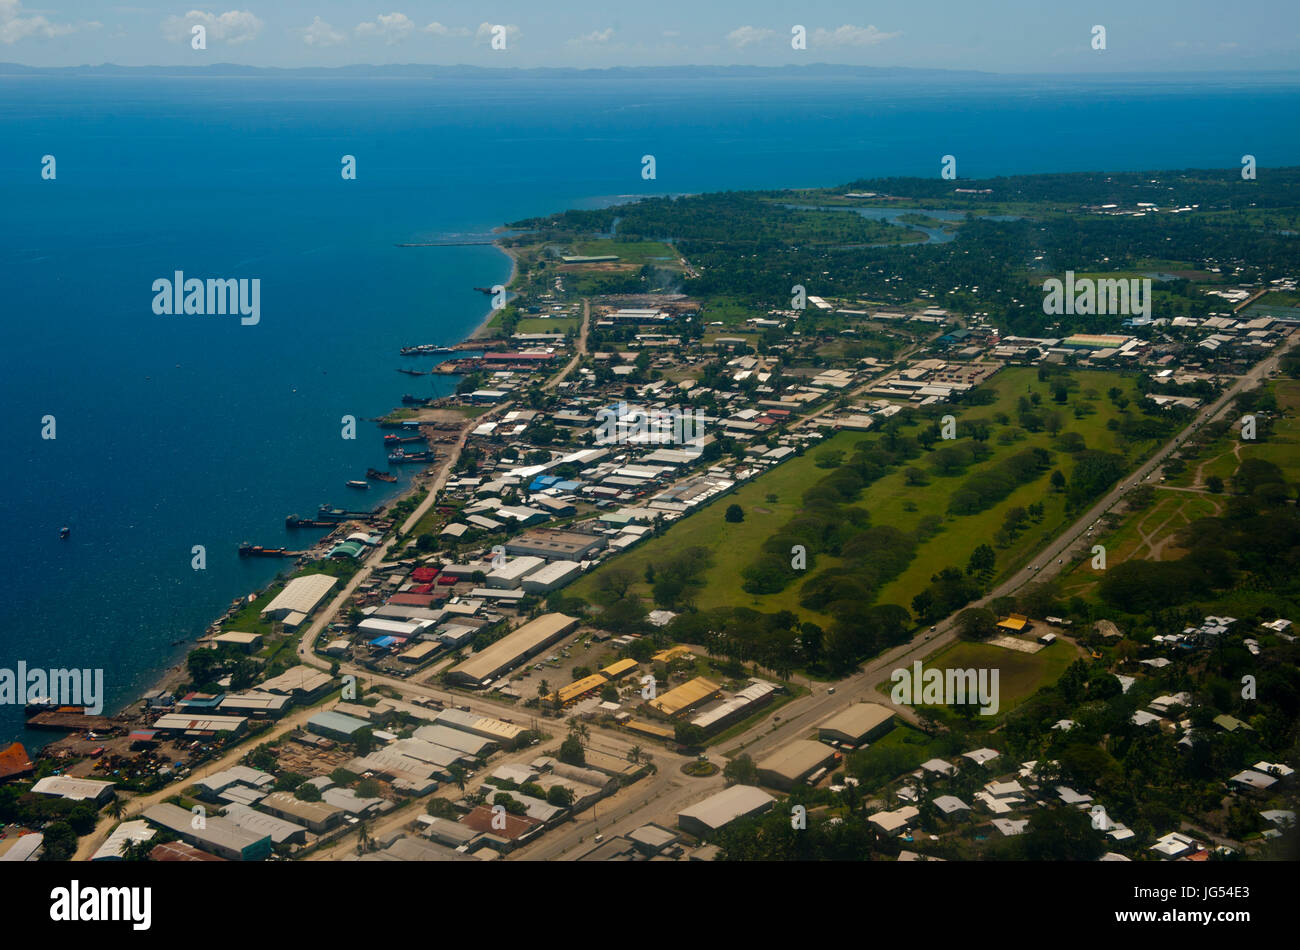 Luftaufnahmen von Honiara, der Hauptstadt der Salomonen, Pazifik  Stockfotografie - Alamy